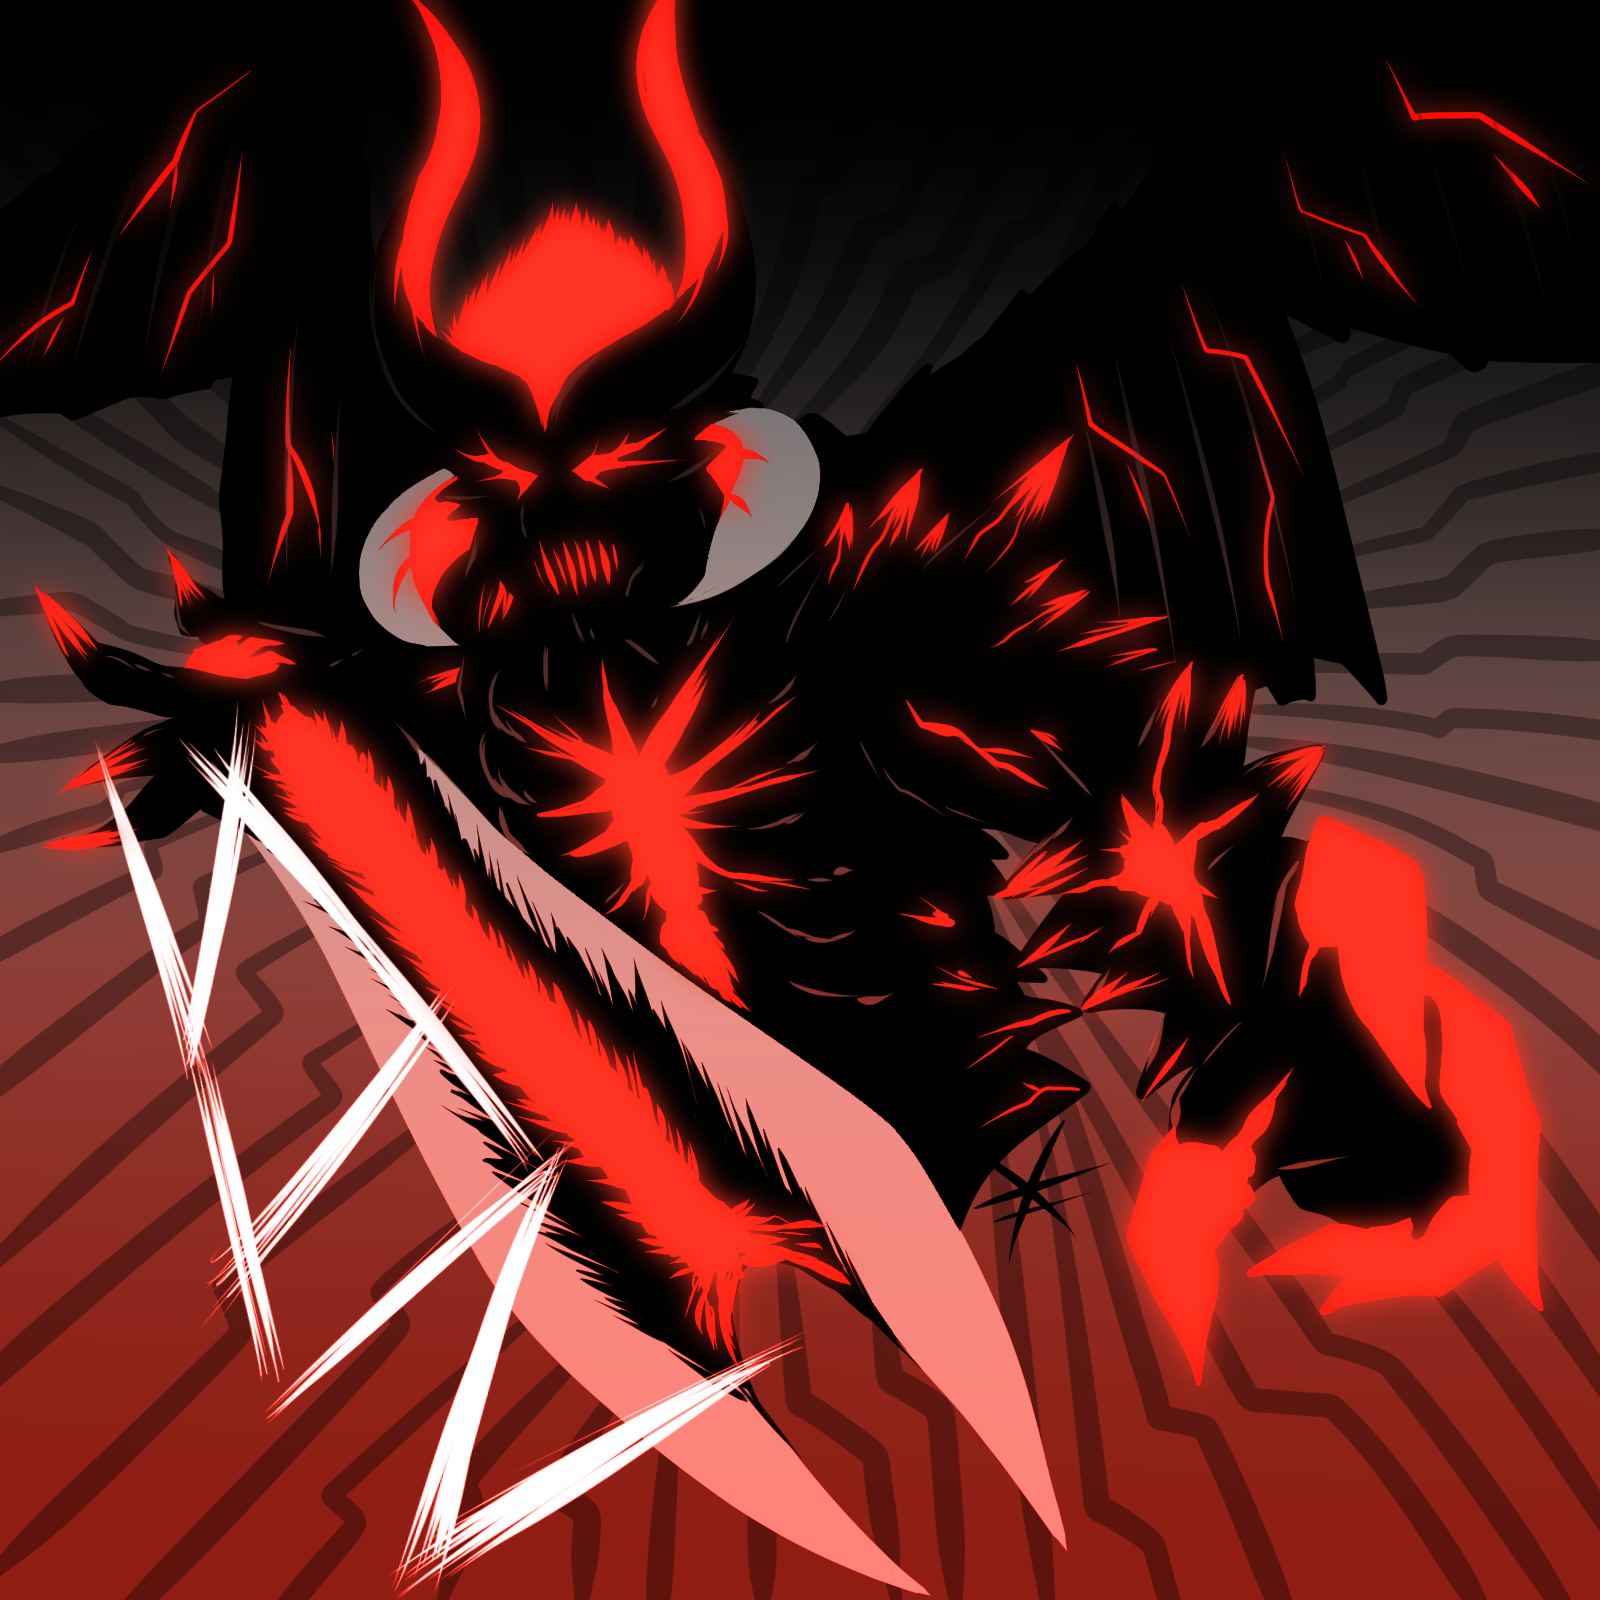 Devil may cry fan art - Dante by derrickSong on DeviantArt